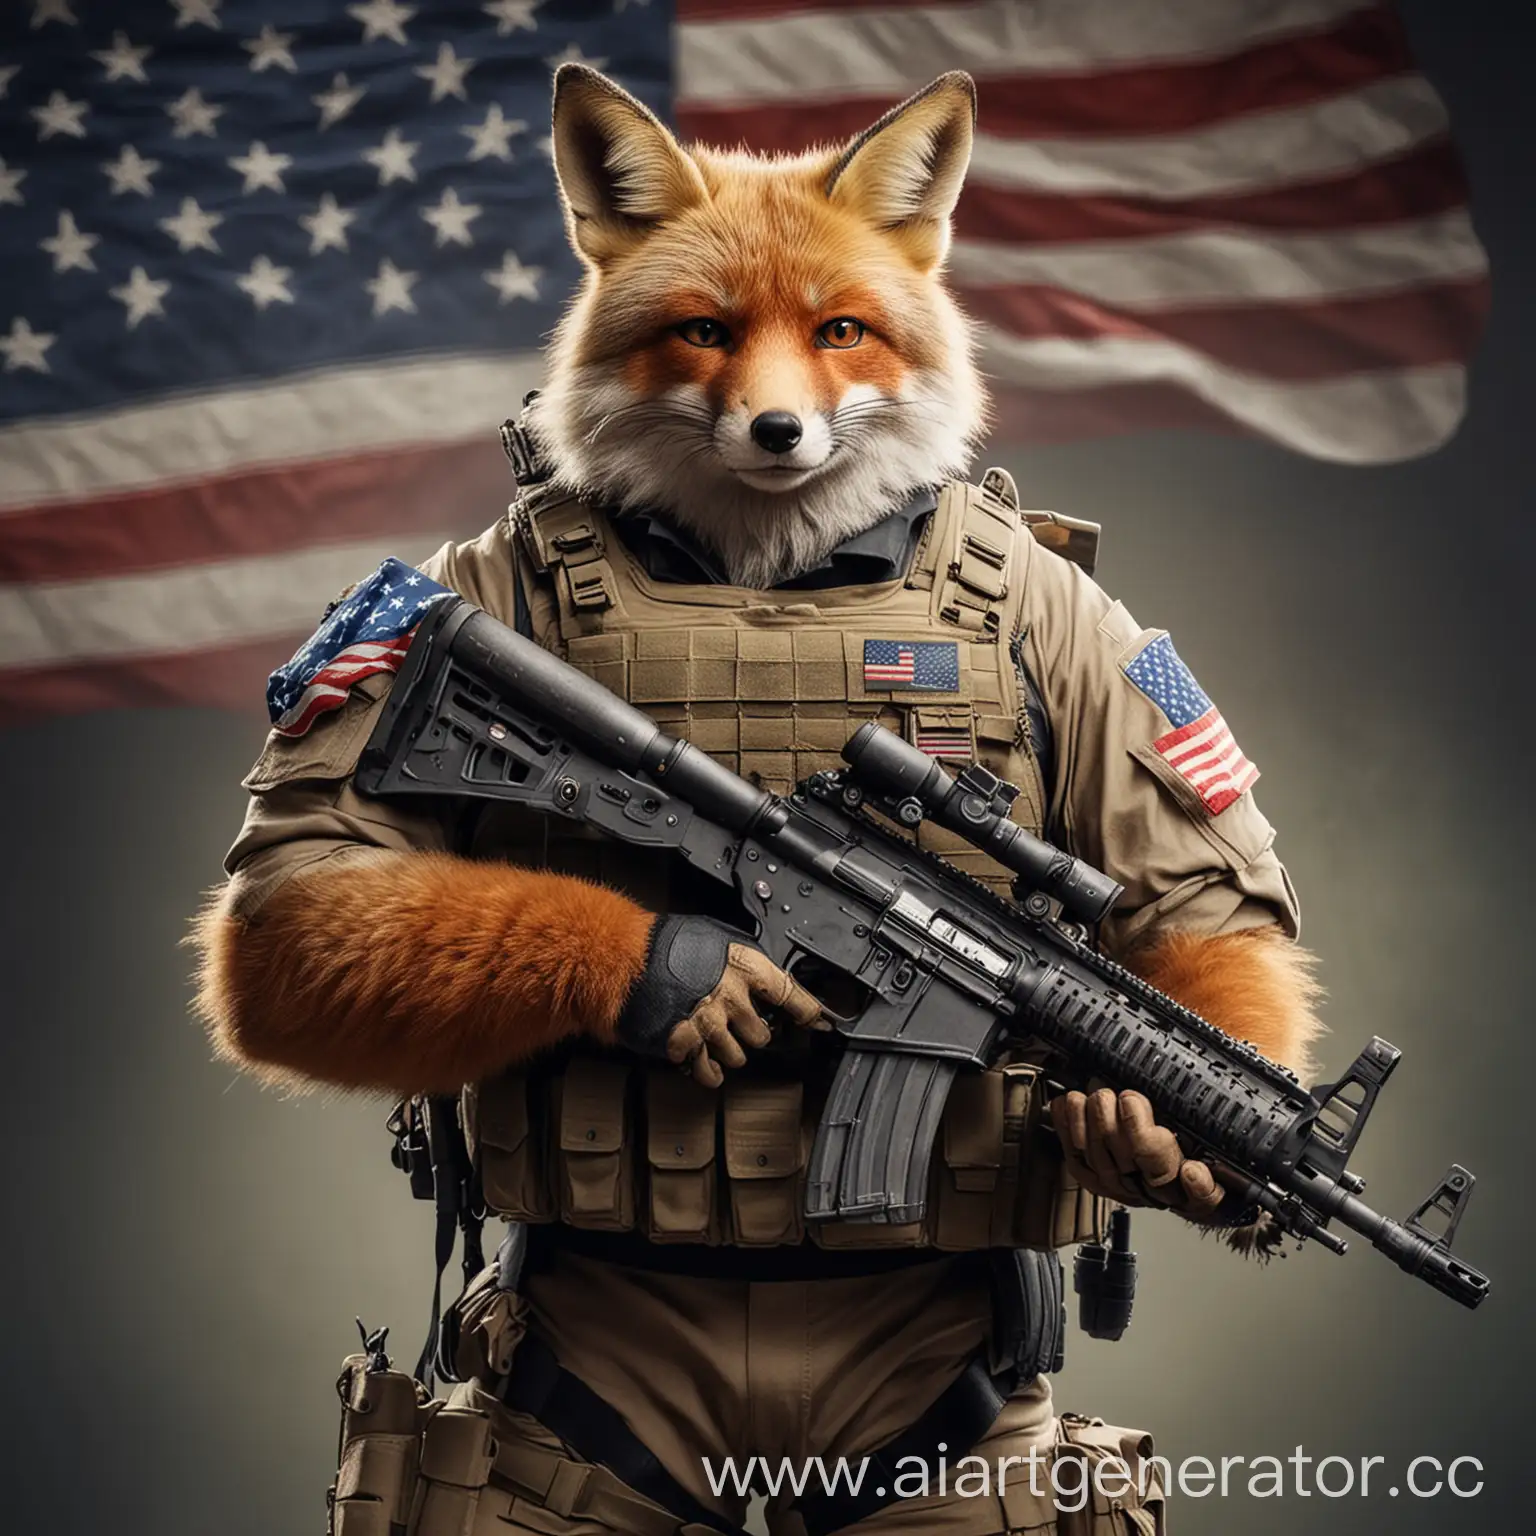 большой и сильный лис в спецназовском костюме с автоматом в руке и американским флагом на плече